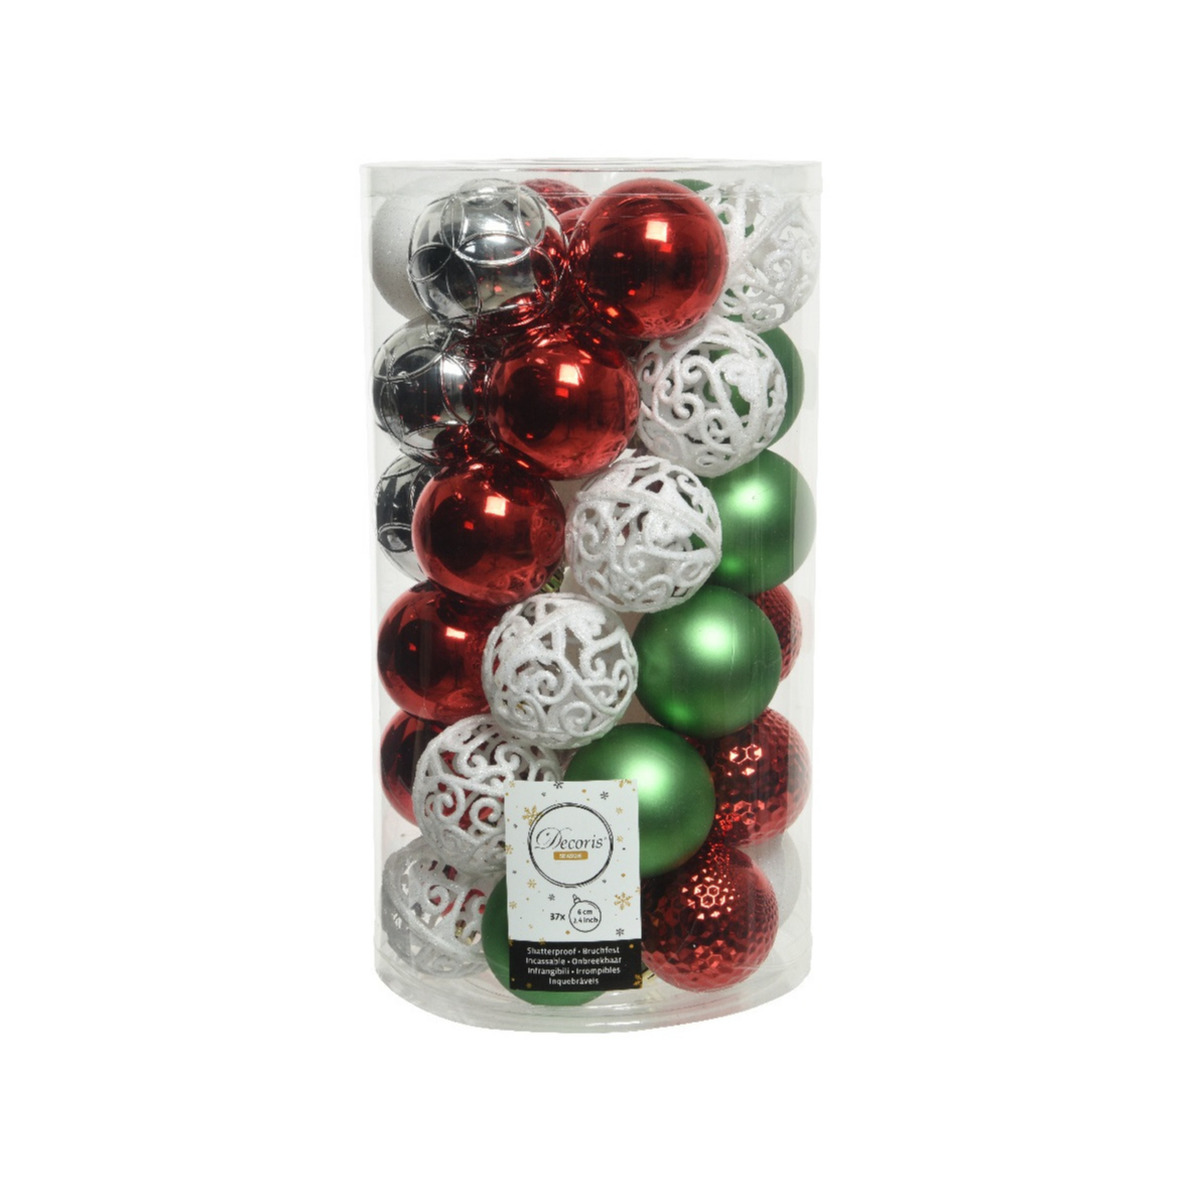 37x stuks kunststof kerstballen wit-rood-groen-zilver mix 6 cm